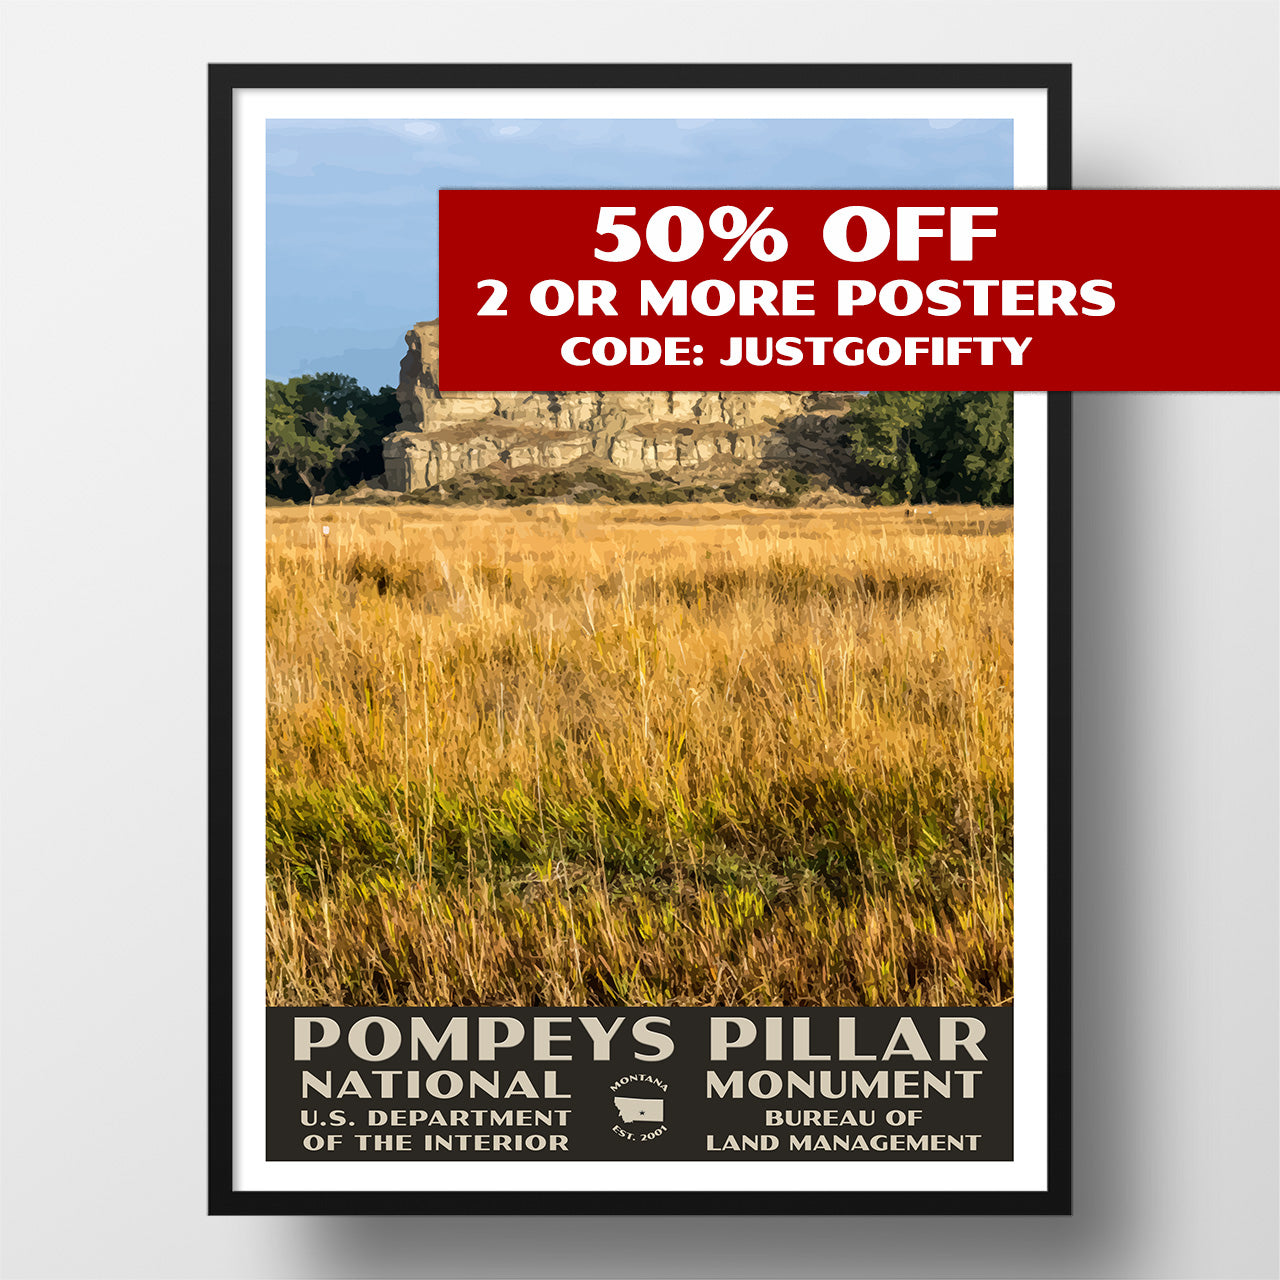 Pompeys Pillar National Monument poster